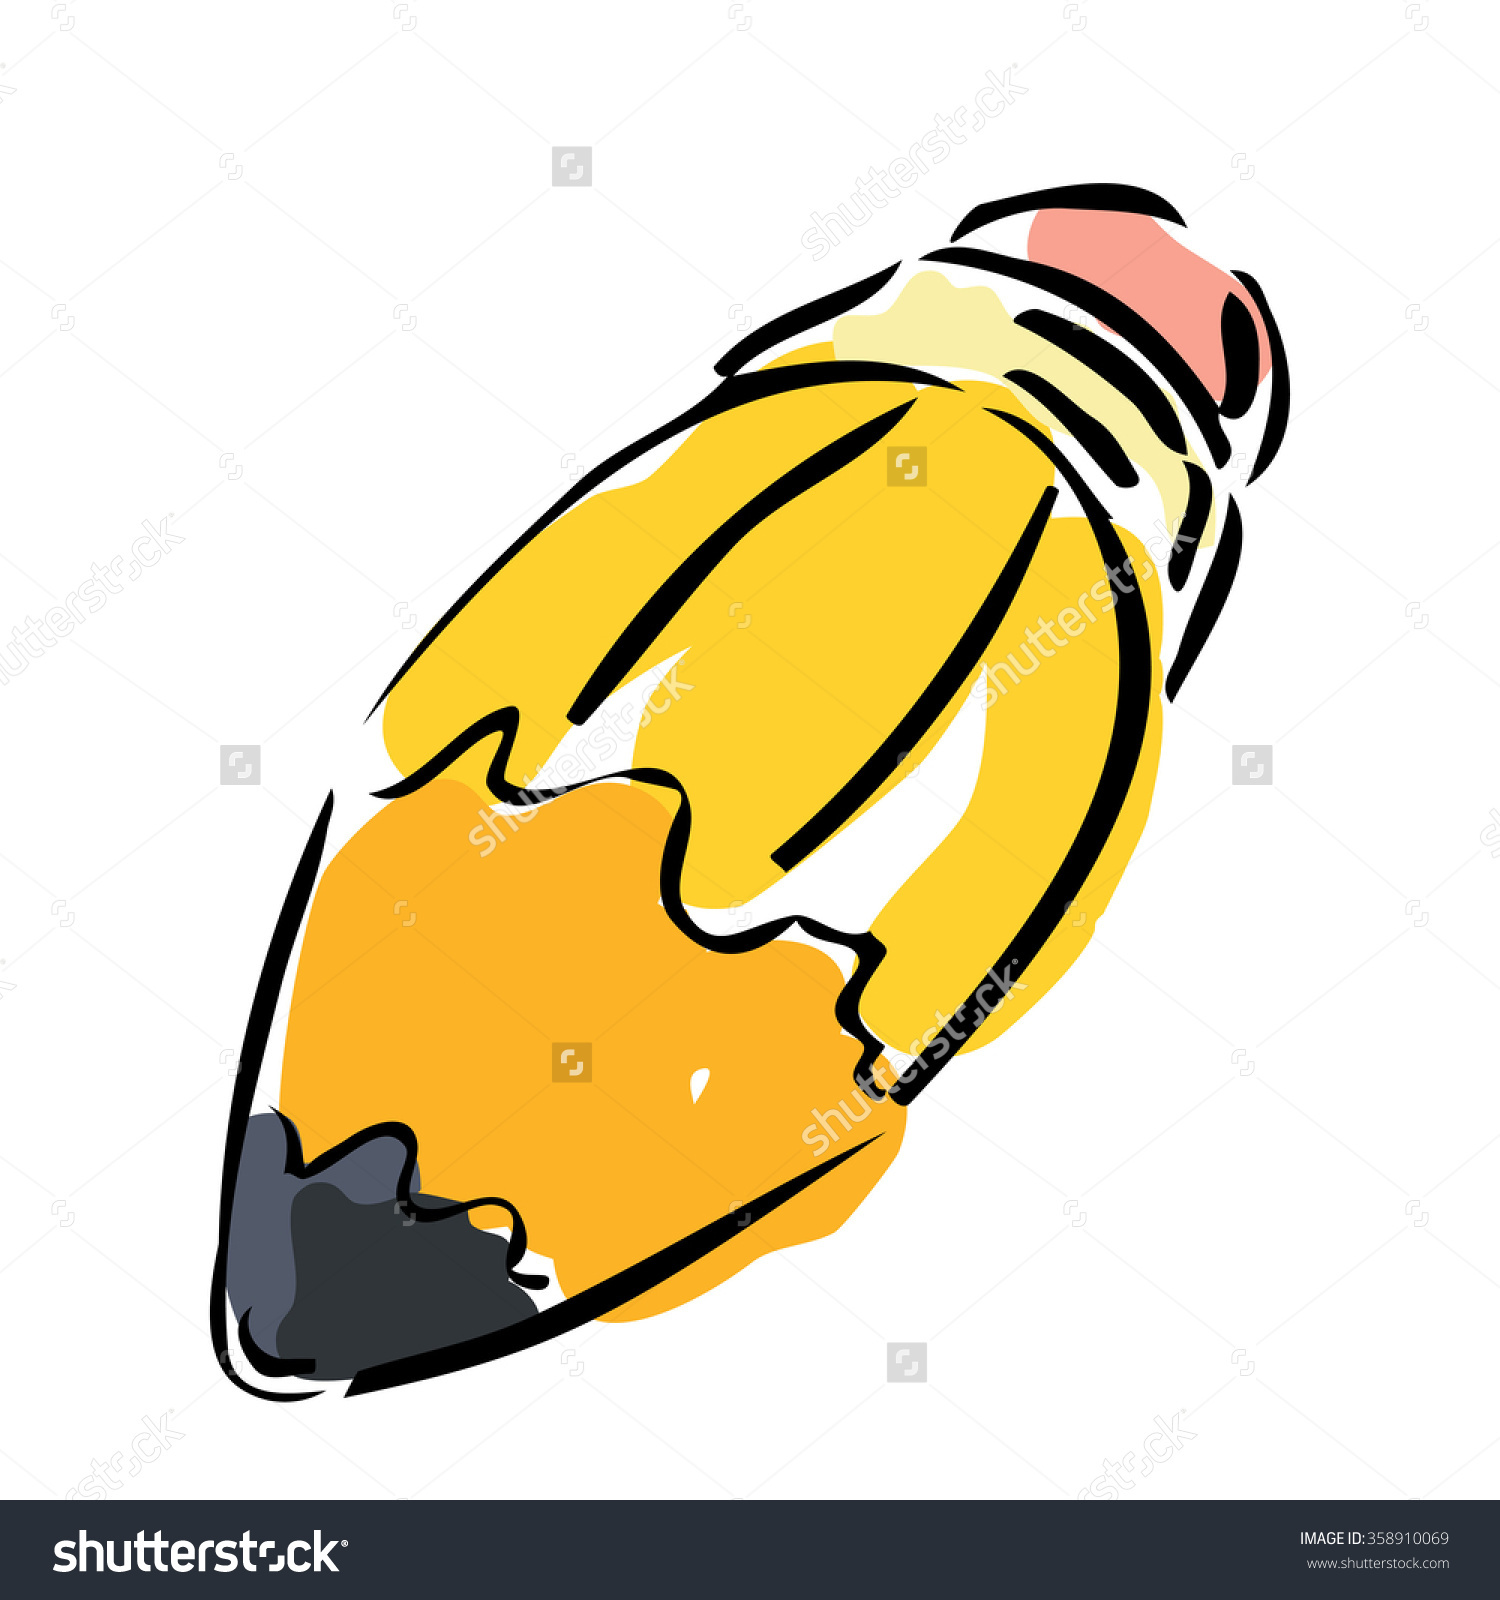 Exaggerated Fat Yellow Carton Pencil Stock Vector 358910069.